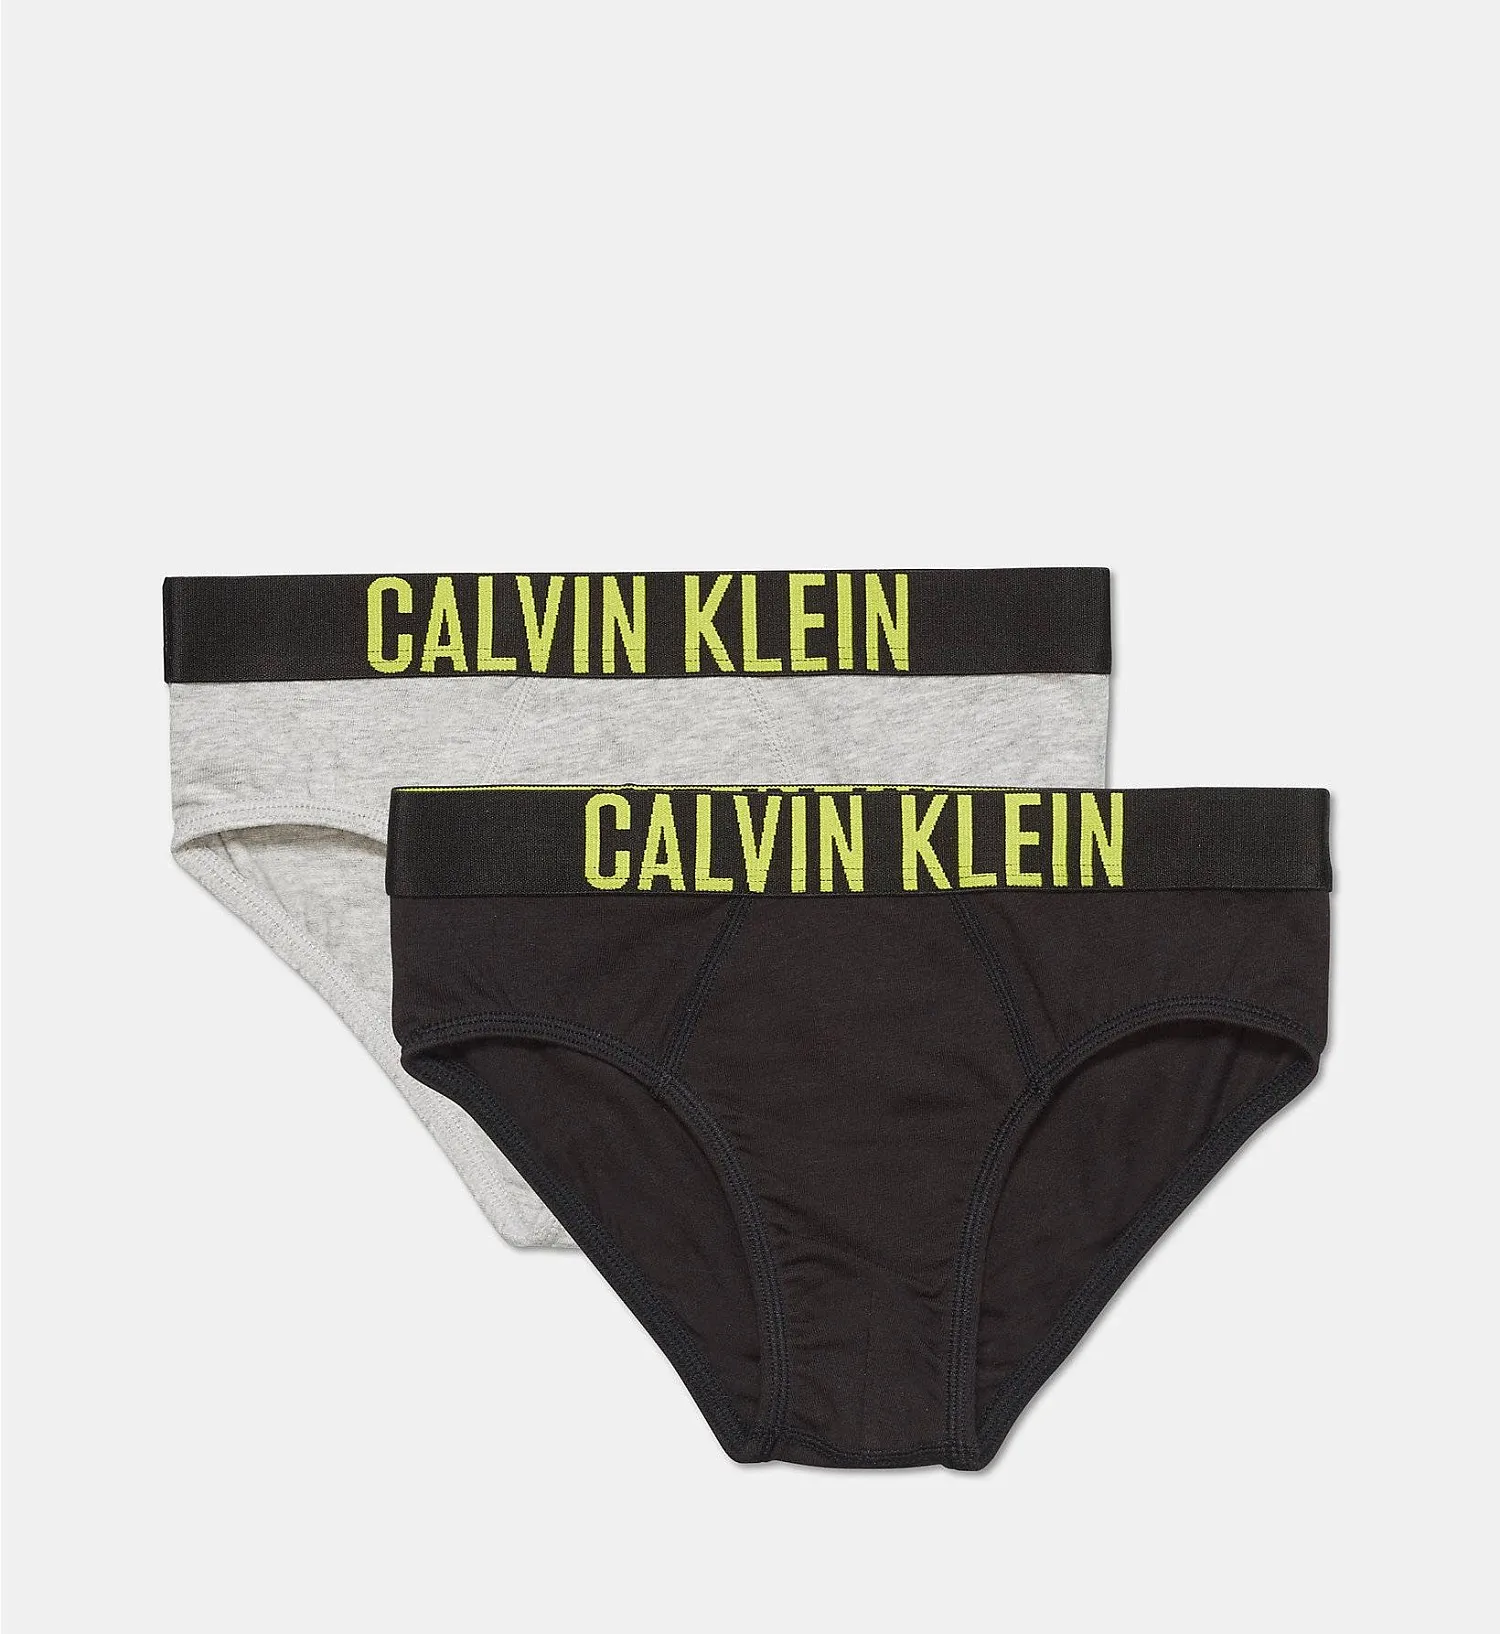 Трусы для мальчиков Calvin Klein - упаковка 2 шт., B70B700113 - купить с  доставкой и примеркой в интернет магазине